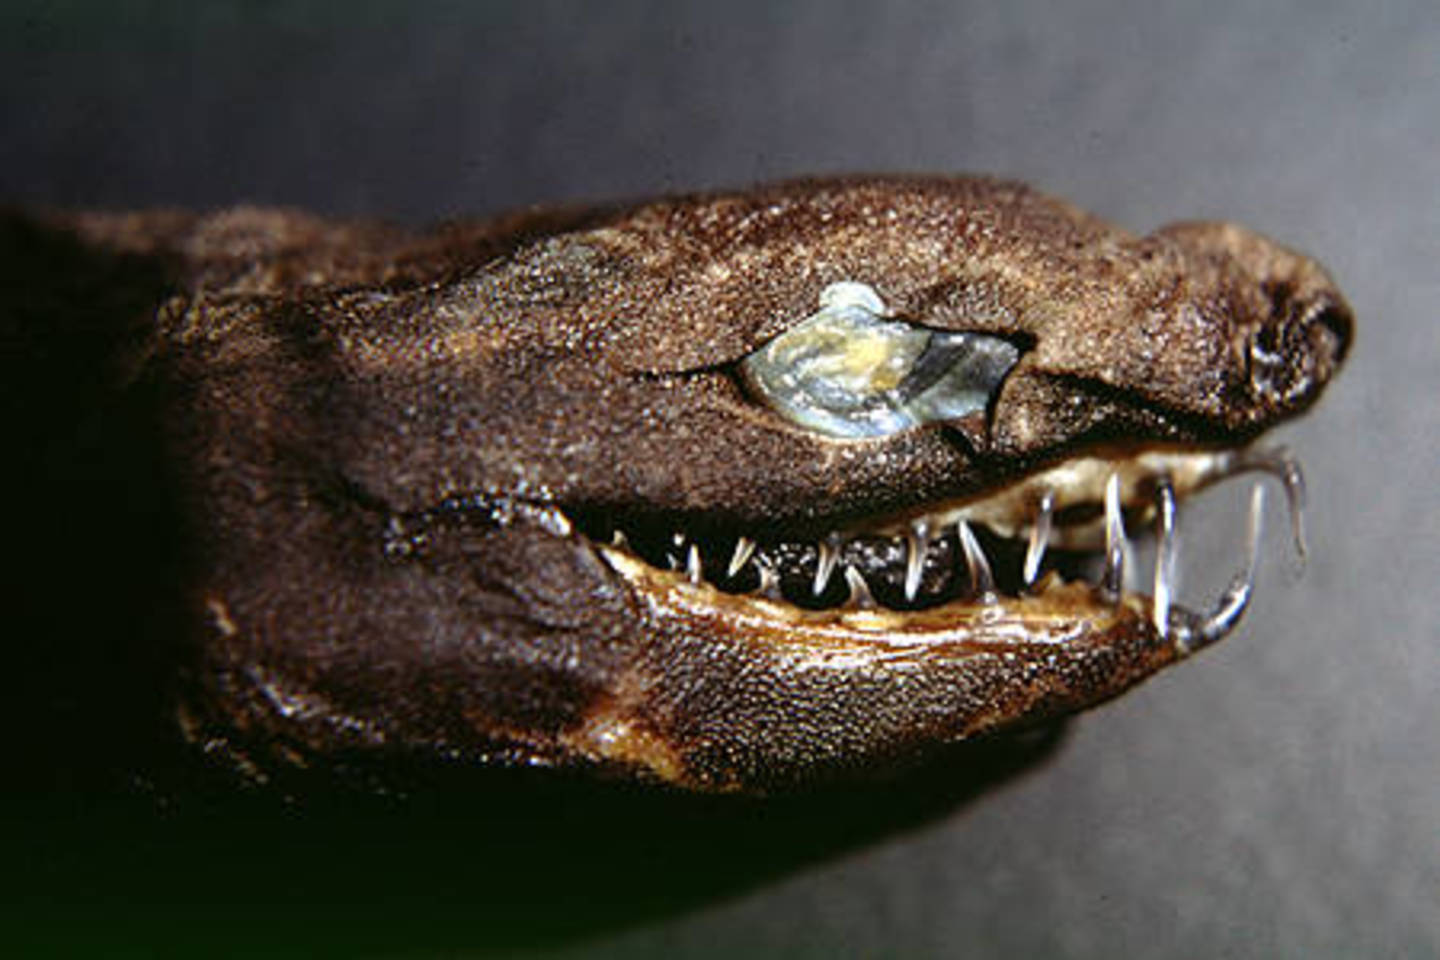  Gyvatiniai dygliarykliai pirmąsyk aptikti tik 1986 metais.<br> S.M.Kajiura (wikipedia.org) nuotr. 